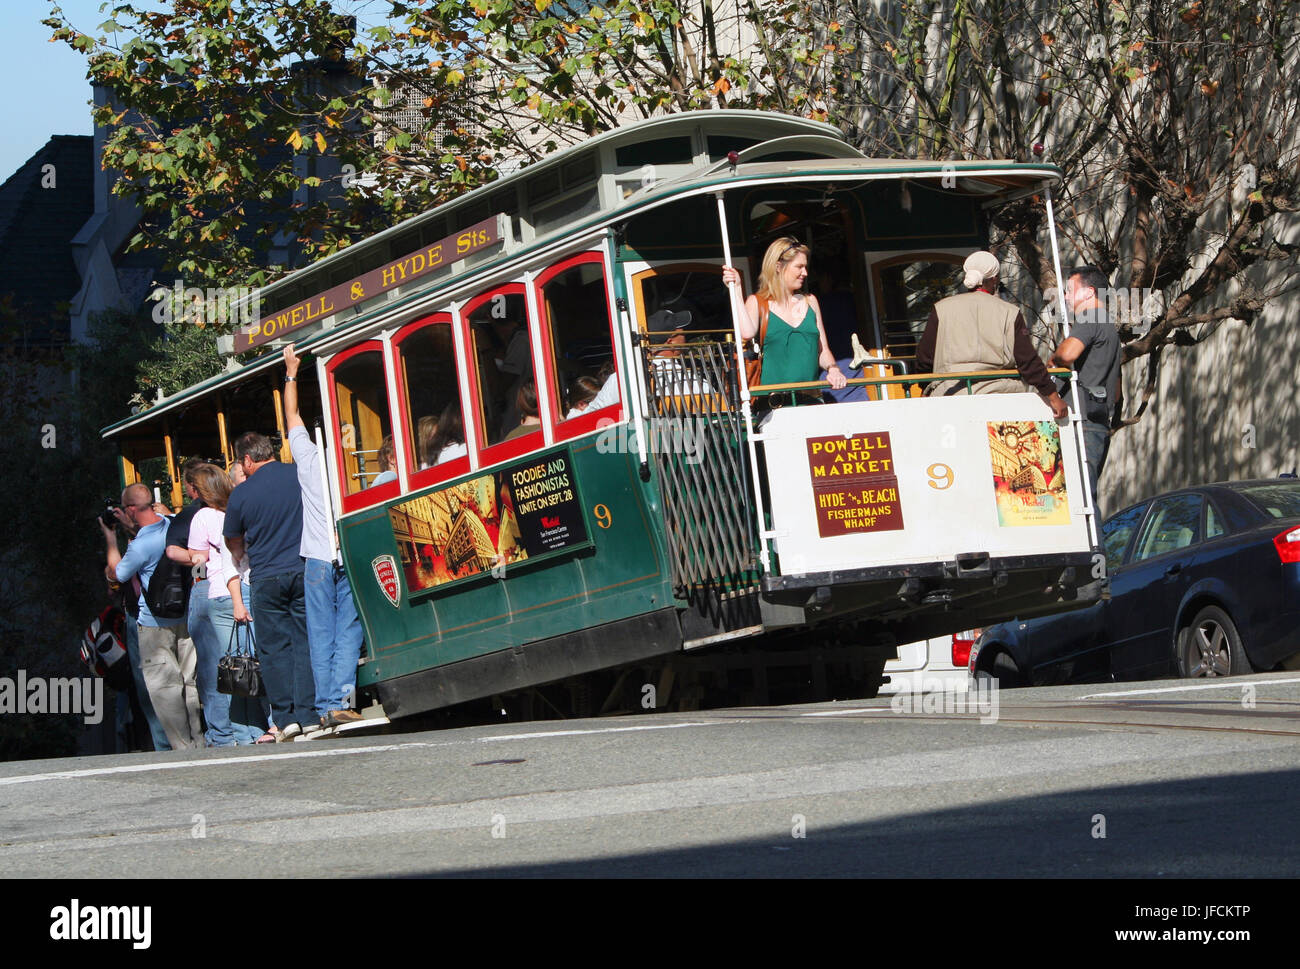 SAN FRANCISCO, CALIFORNIE - Le 23 octobre : Les passagers profitez d'une balade dans un téléphérique dans les rues de San Francisco le 23 octobre 2006 à San Francisco, C Banque D'Images